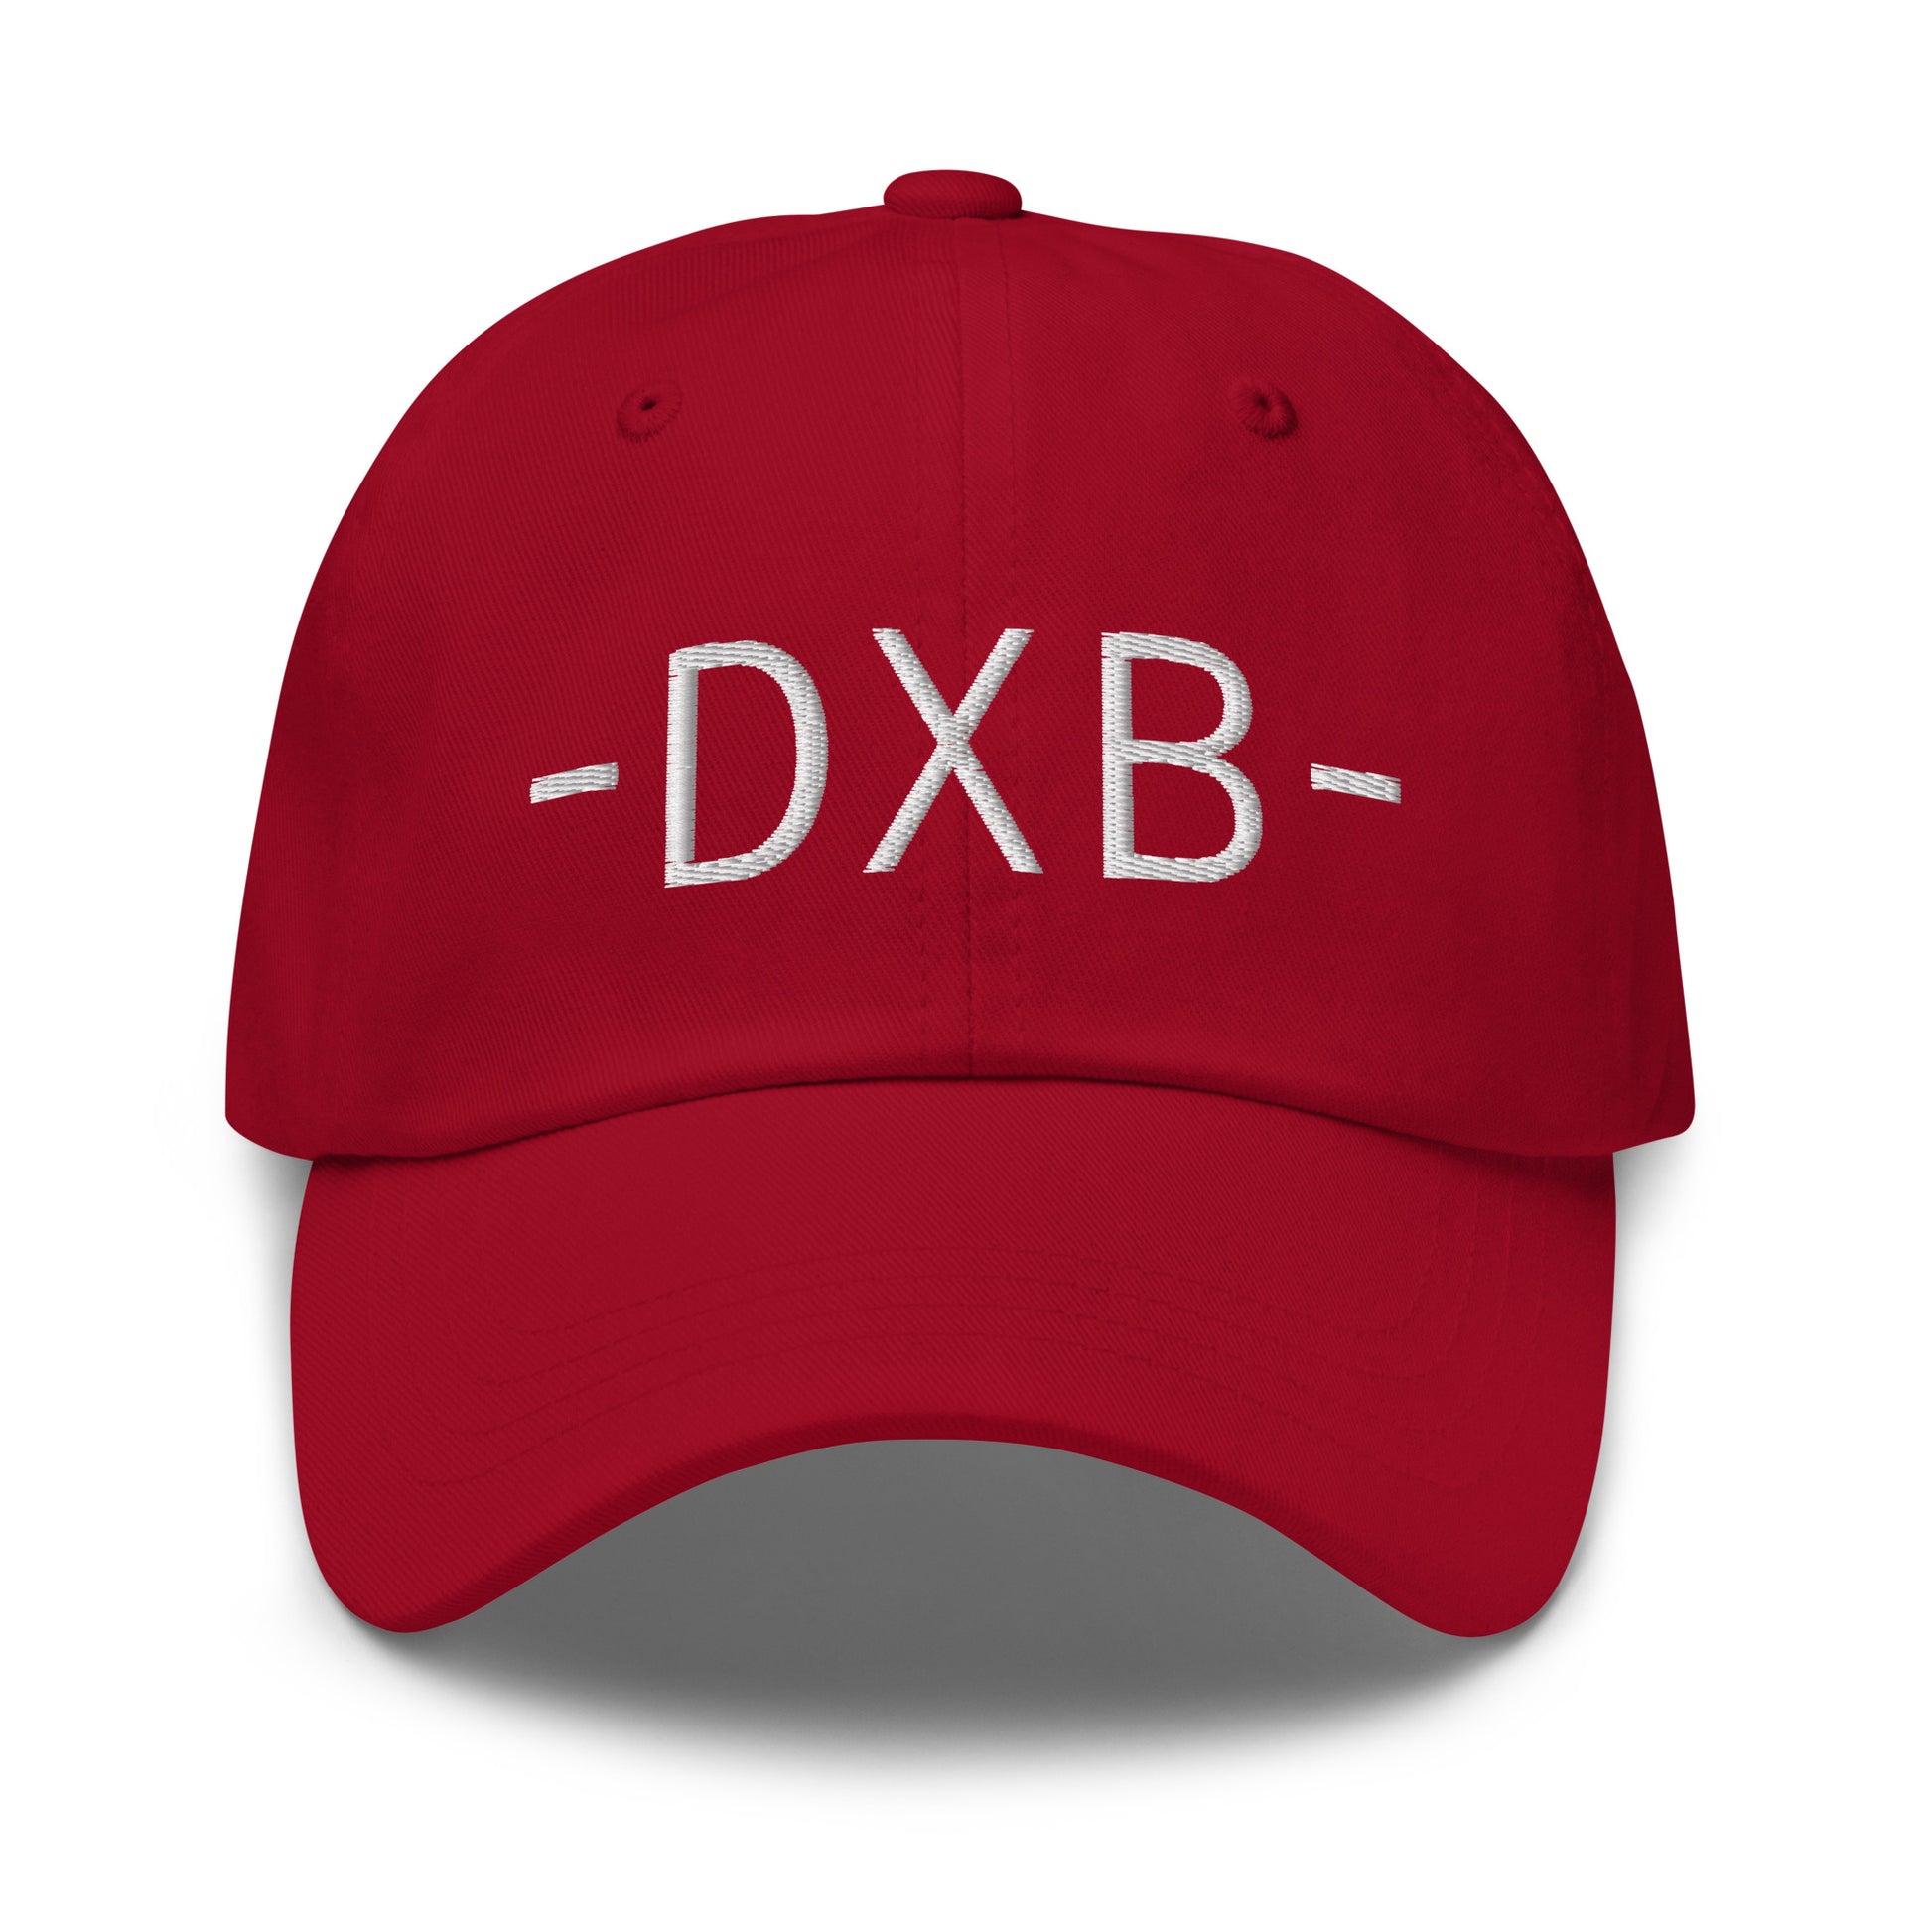 Souvenir Baseball Cap - White • DXB Dubai • YHM Designs - Image 16